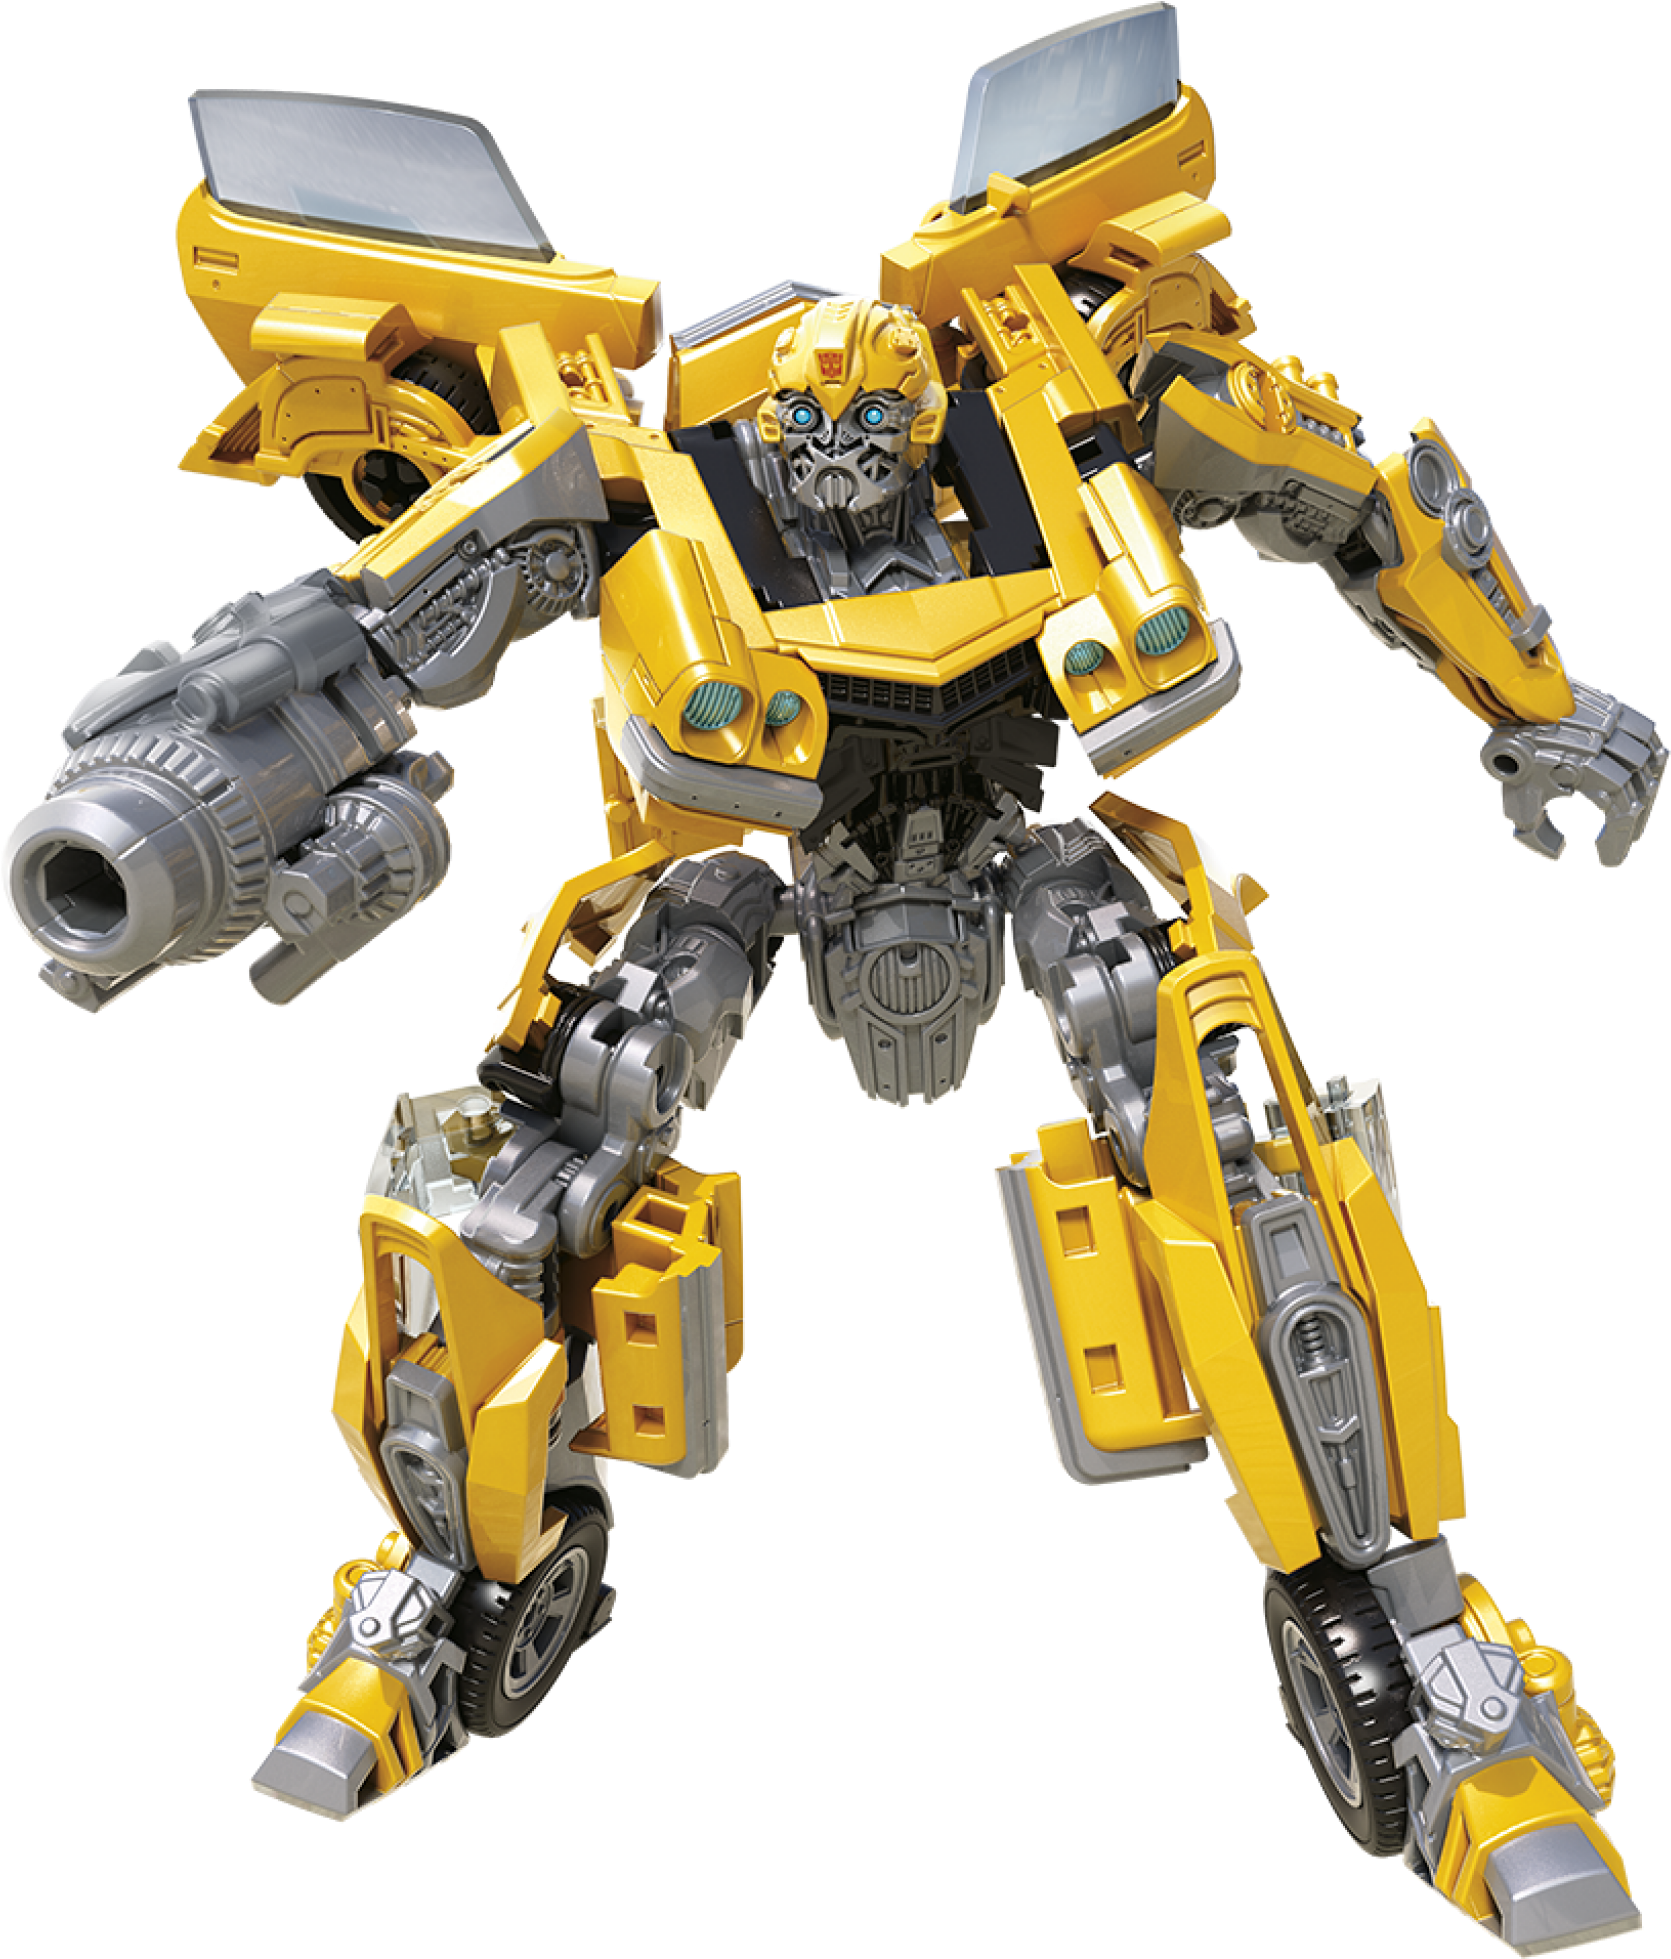 Transformers Studio Series 27 Deluxe Class Transformers - Transformers Sideswipe Studio Series Toy (2048x2048), Png Download